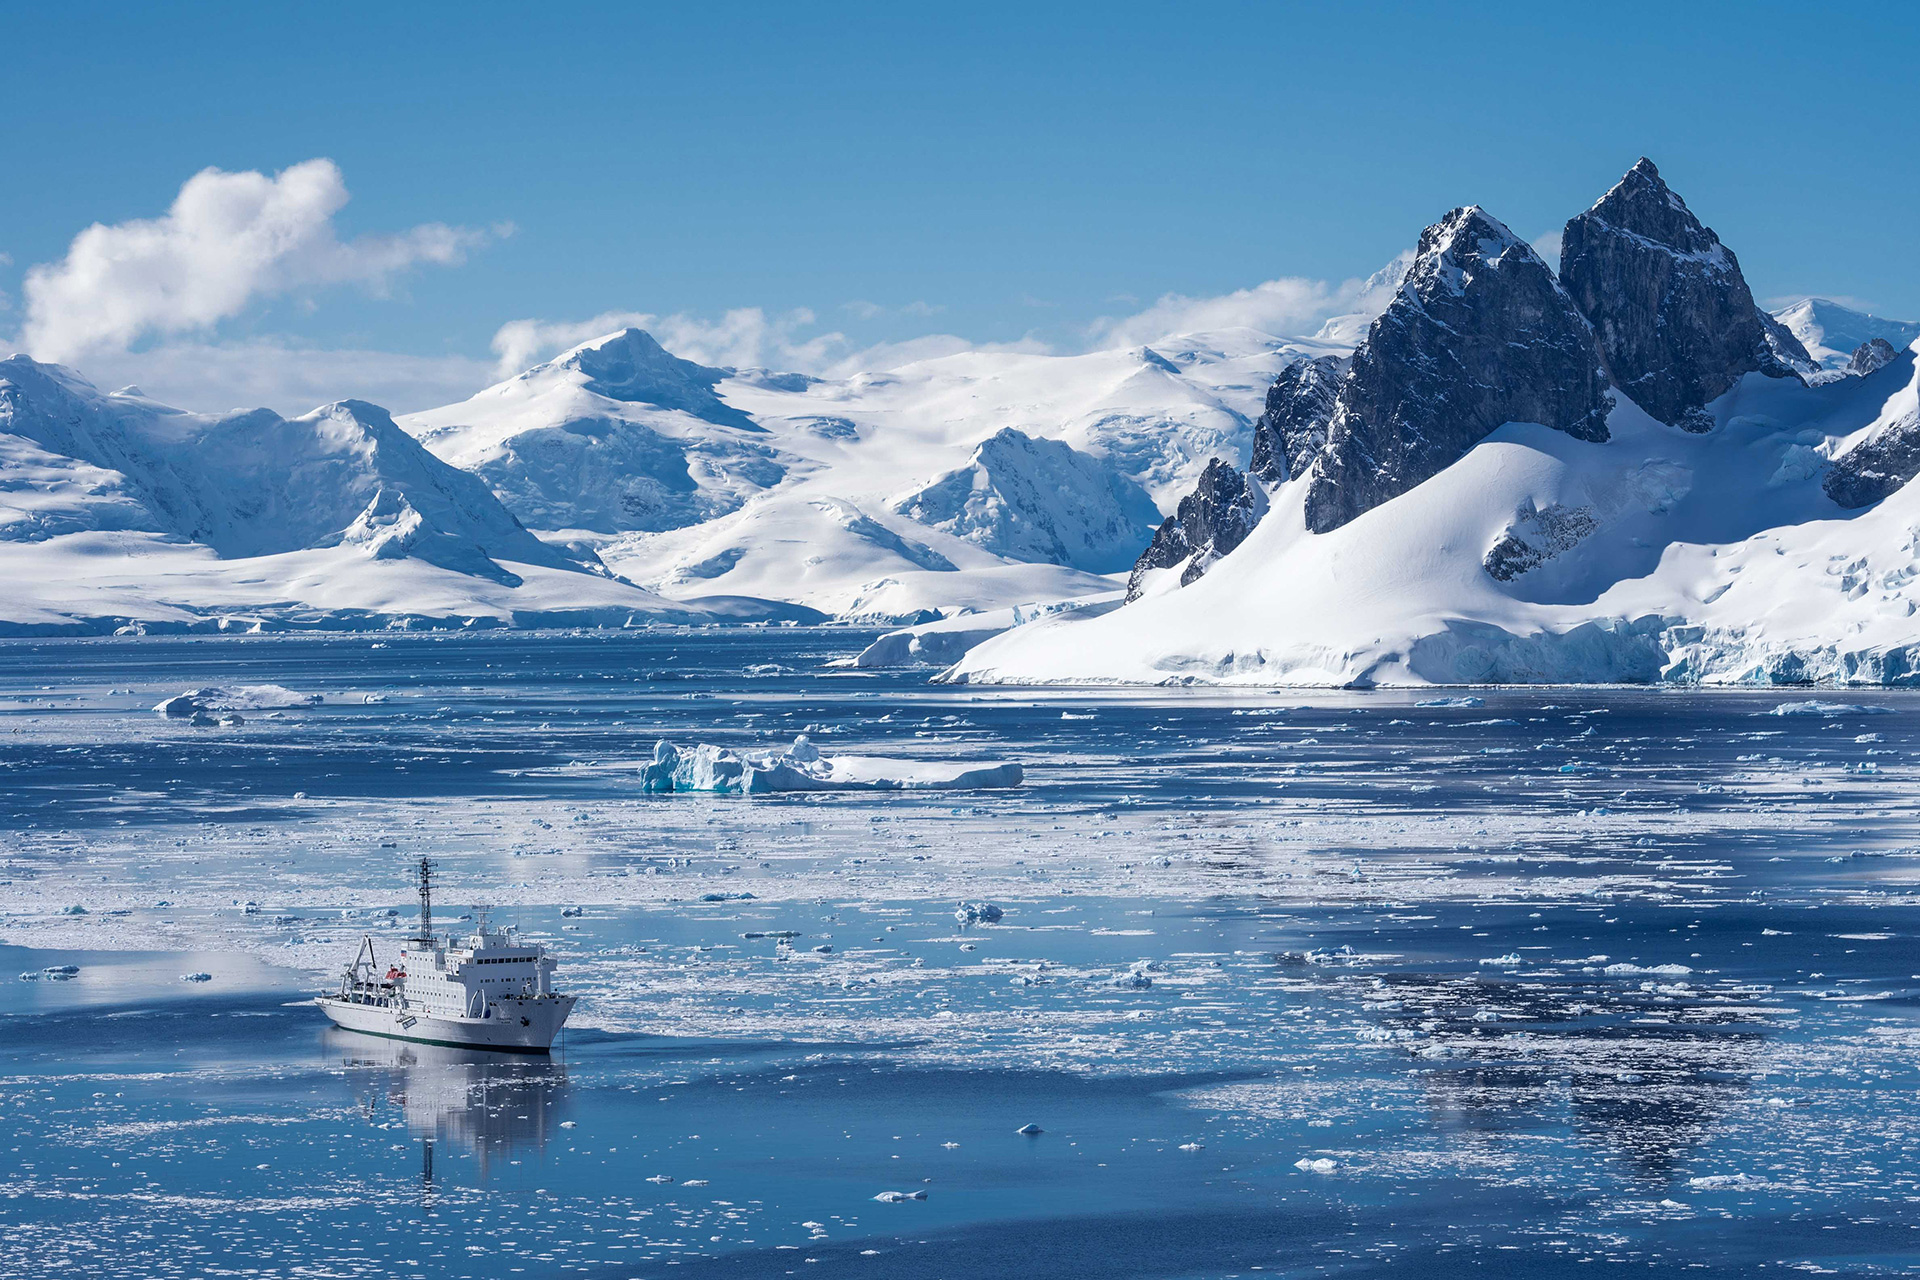 Antarctica expedition cruises